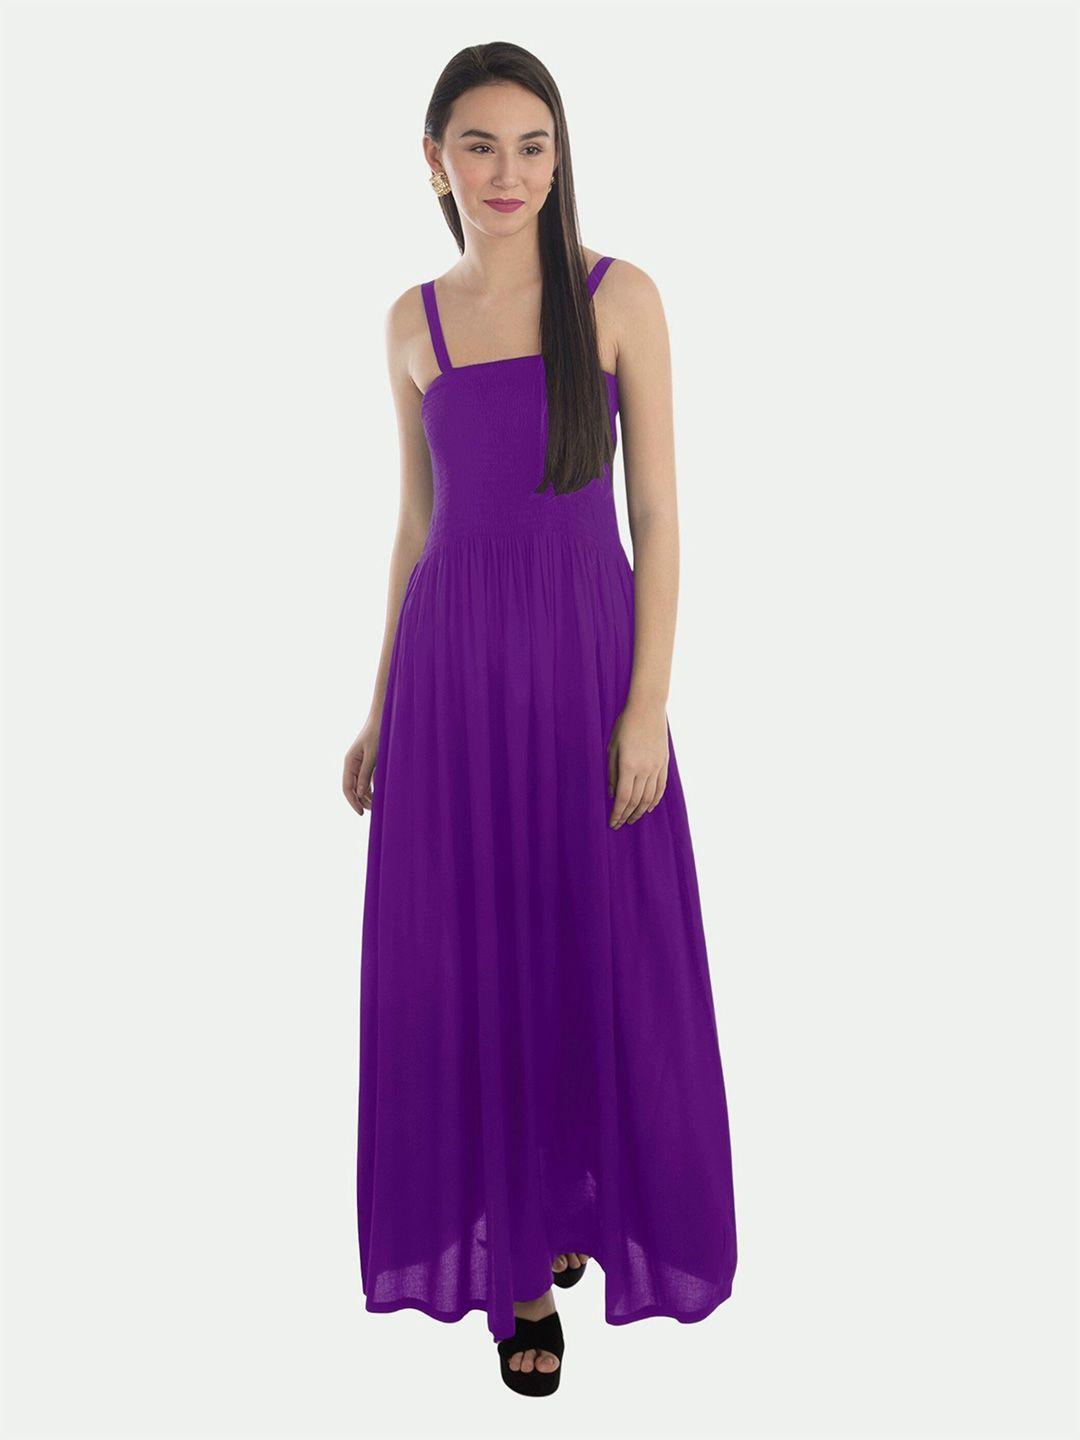 patrorna purple maxi maxi dress